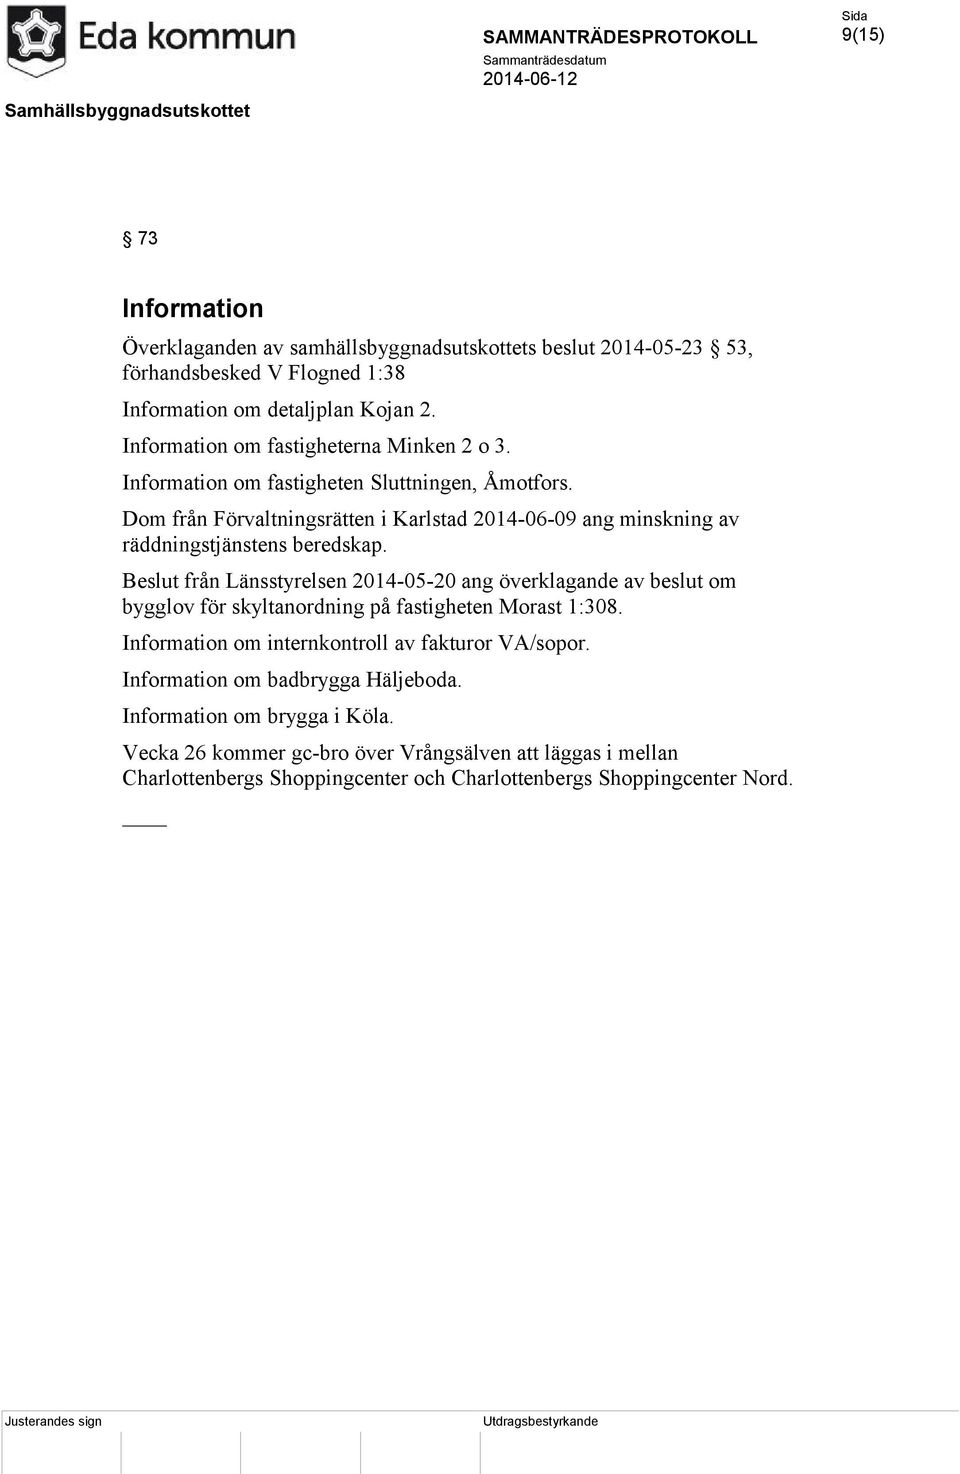 Dom från Förvaltningsrätten i Karlstad 2014-06-09 ang minskning av räddningstjänstens beredskap.